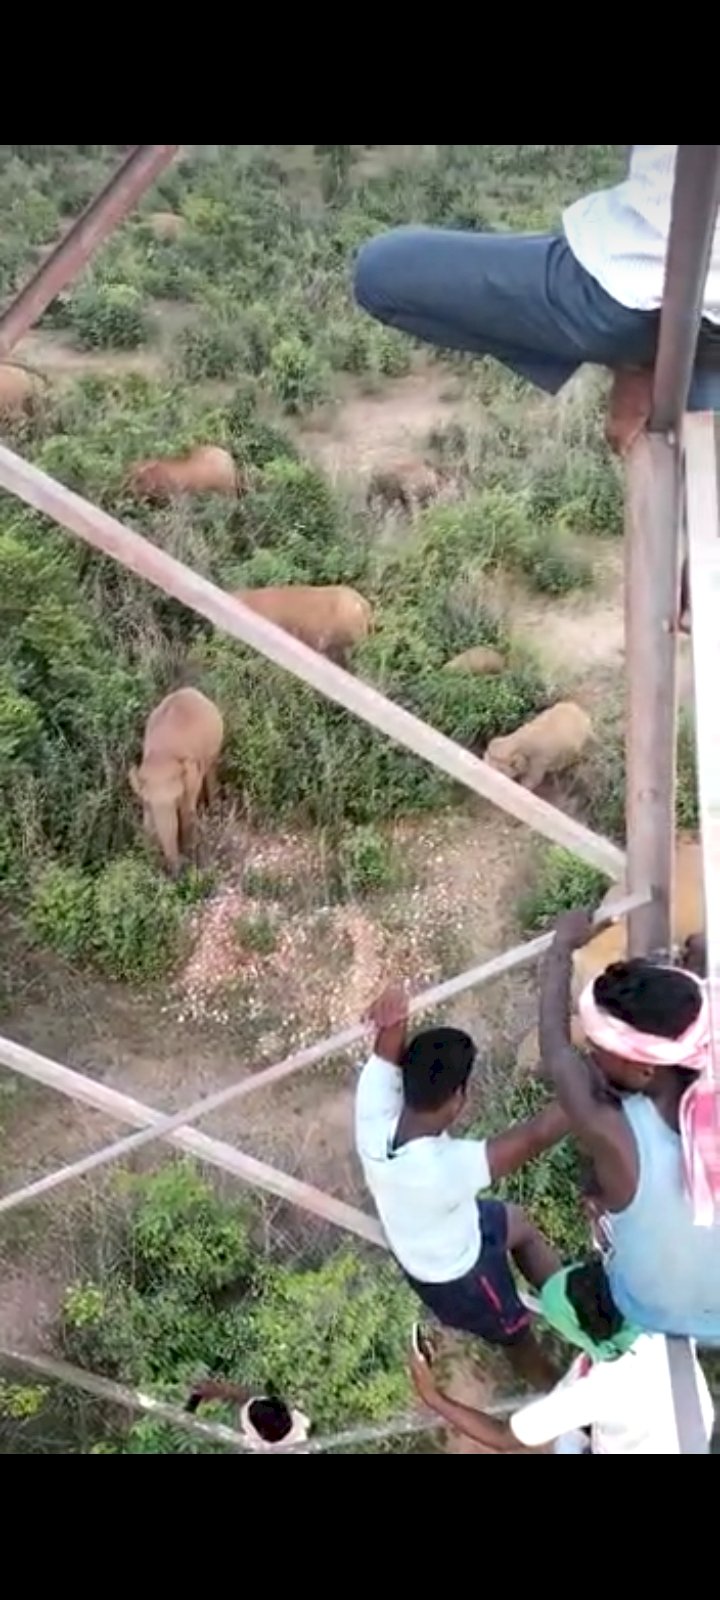 चंदा हाथियों का दल अभी भी कर रहे विचरण खेत खलिहान जाने से करें परहेज जानिए आगे खबर में